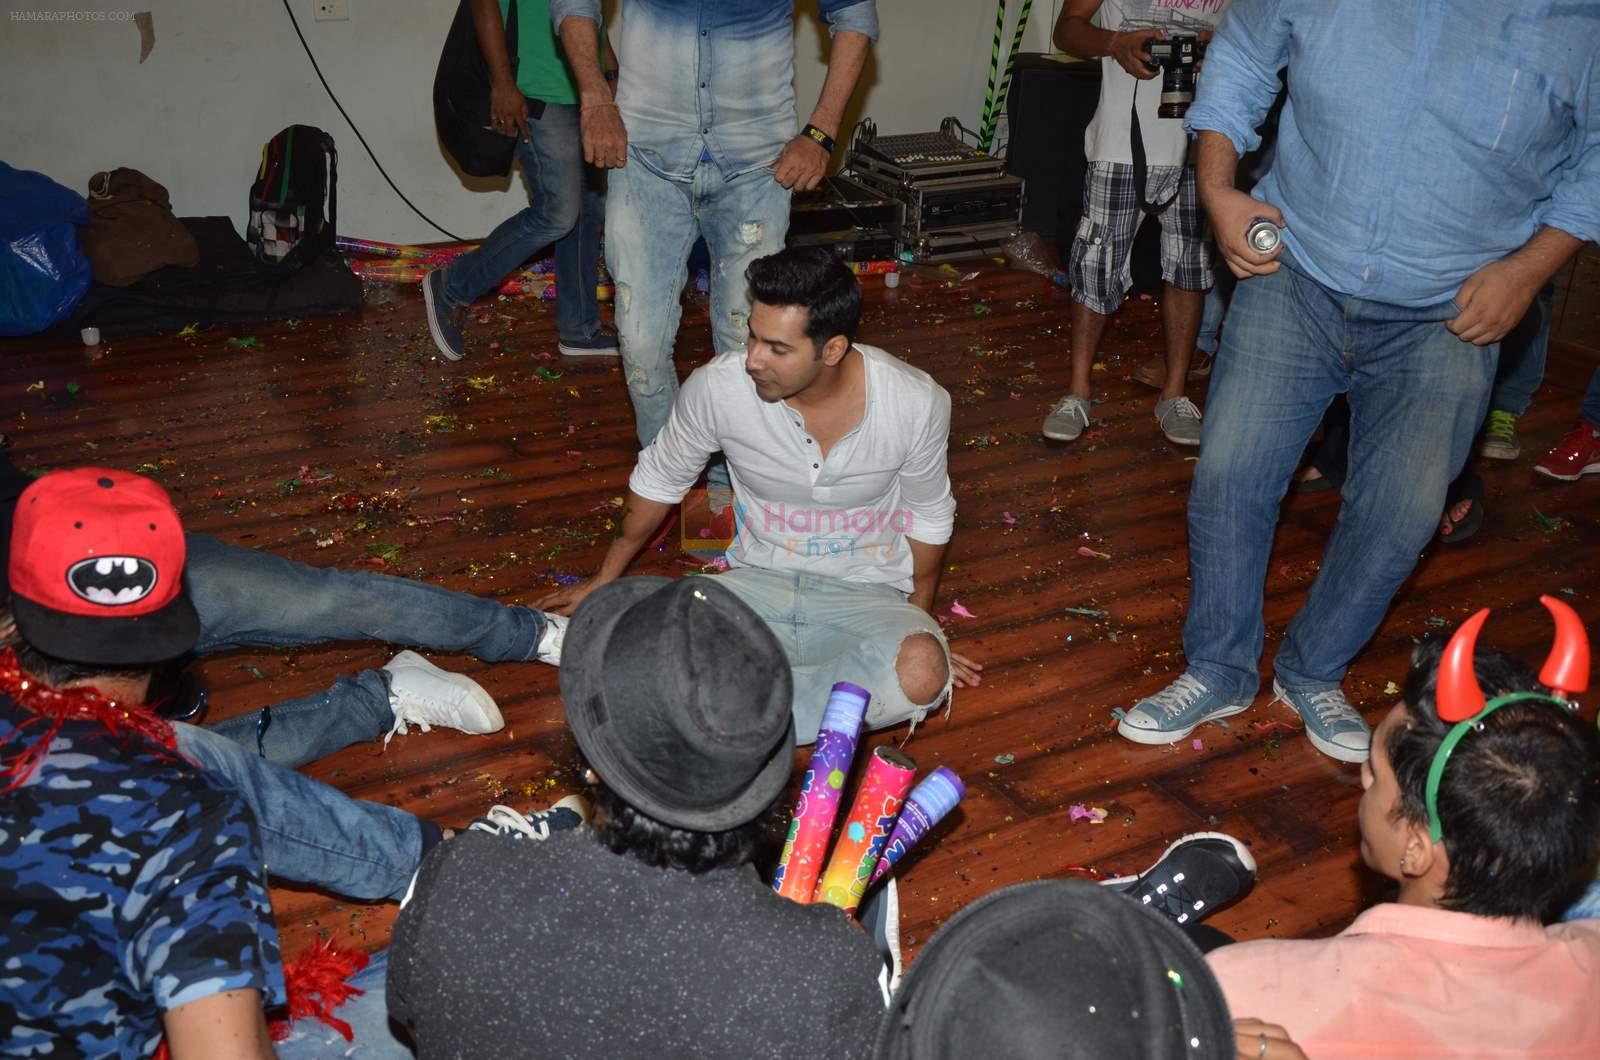 Varun Dhawan at ABCD 2 promotions in Andheri, Mumbai on 20th May 2015